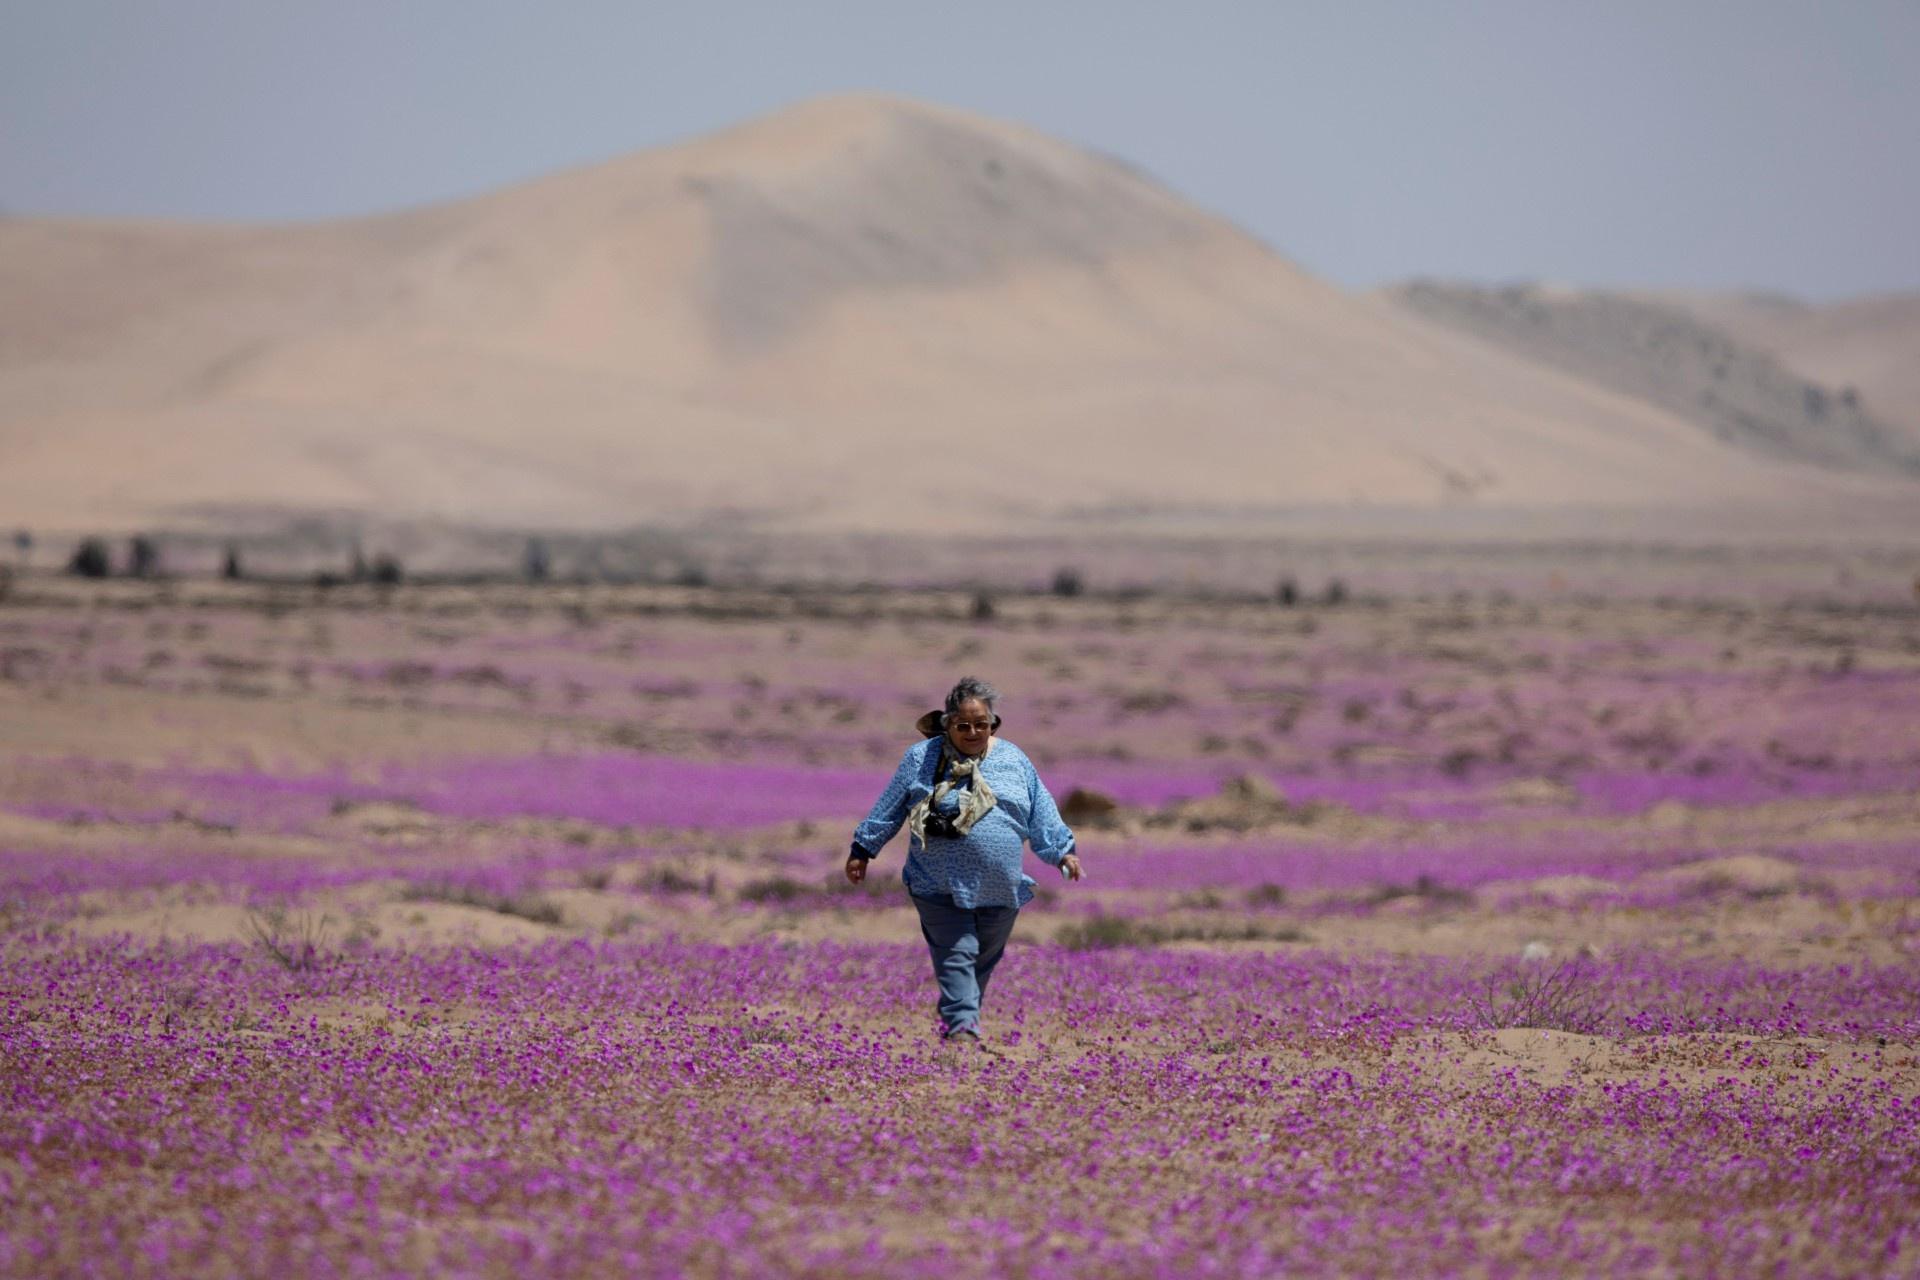 Kì diệu thảm hoa nở rực rỡ trên sa mạc khô cằn nhất thế giới - 1